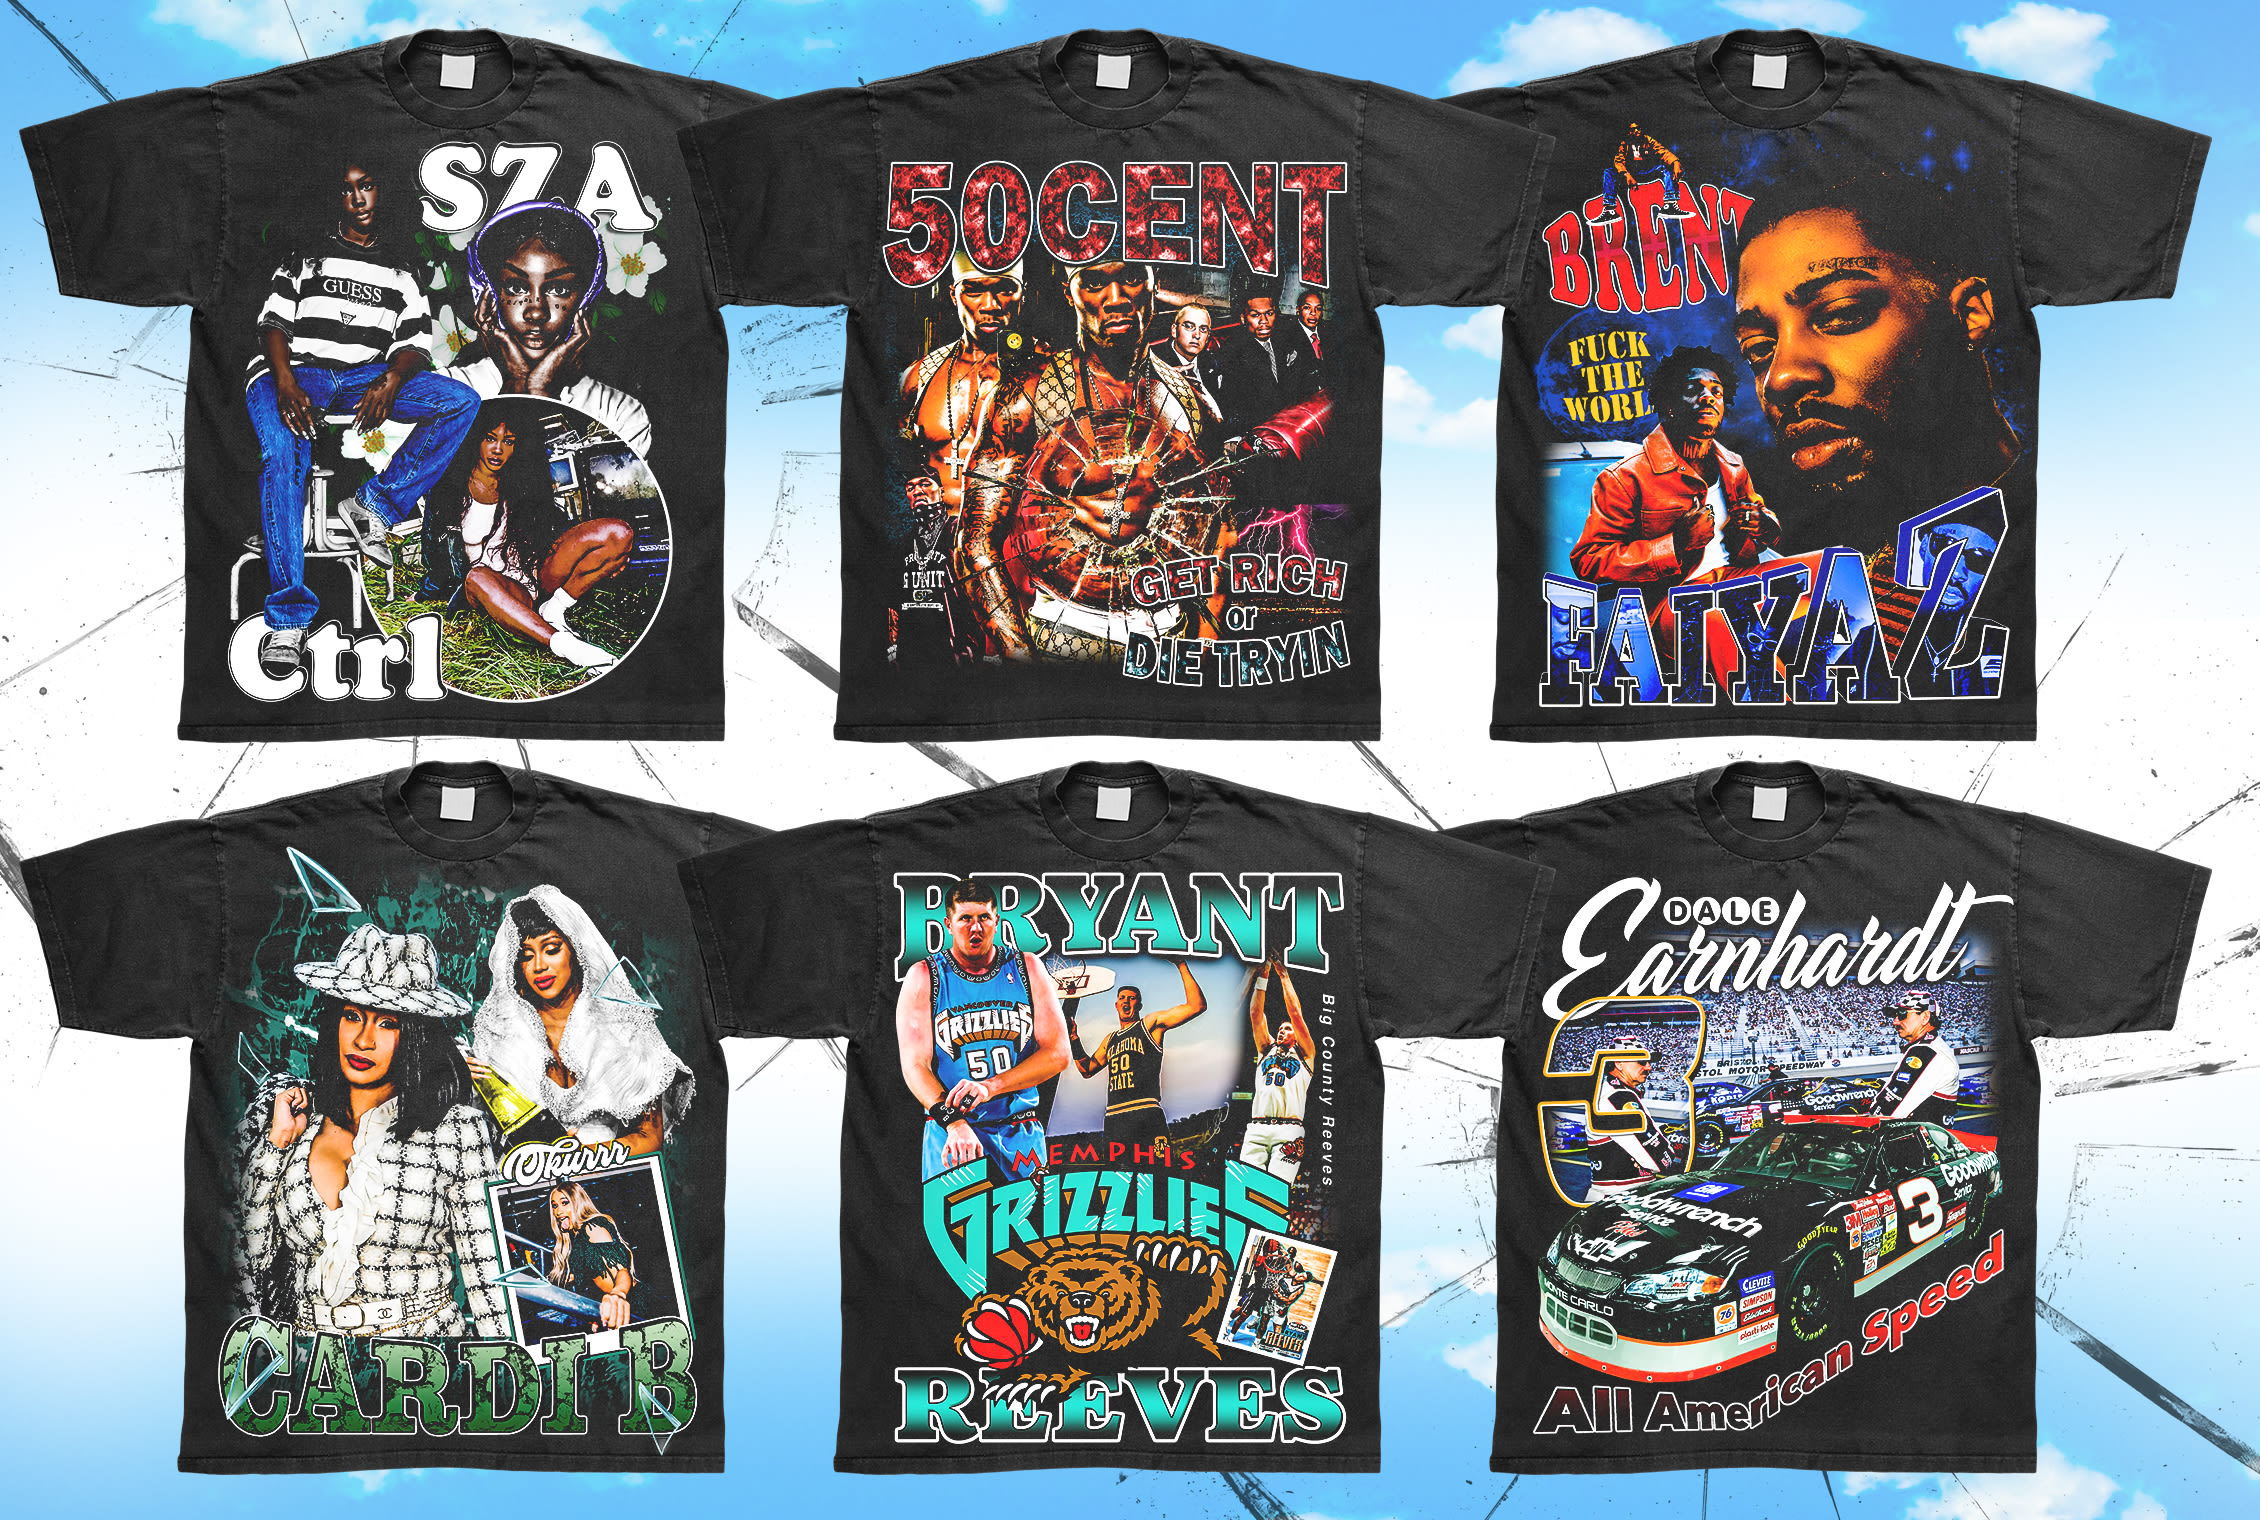 Afstemning Vurdering Udvikle Do bootleg vintage rap hip hop t shirt design by Snowbei | Fiverr